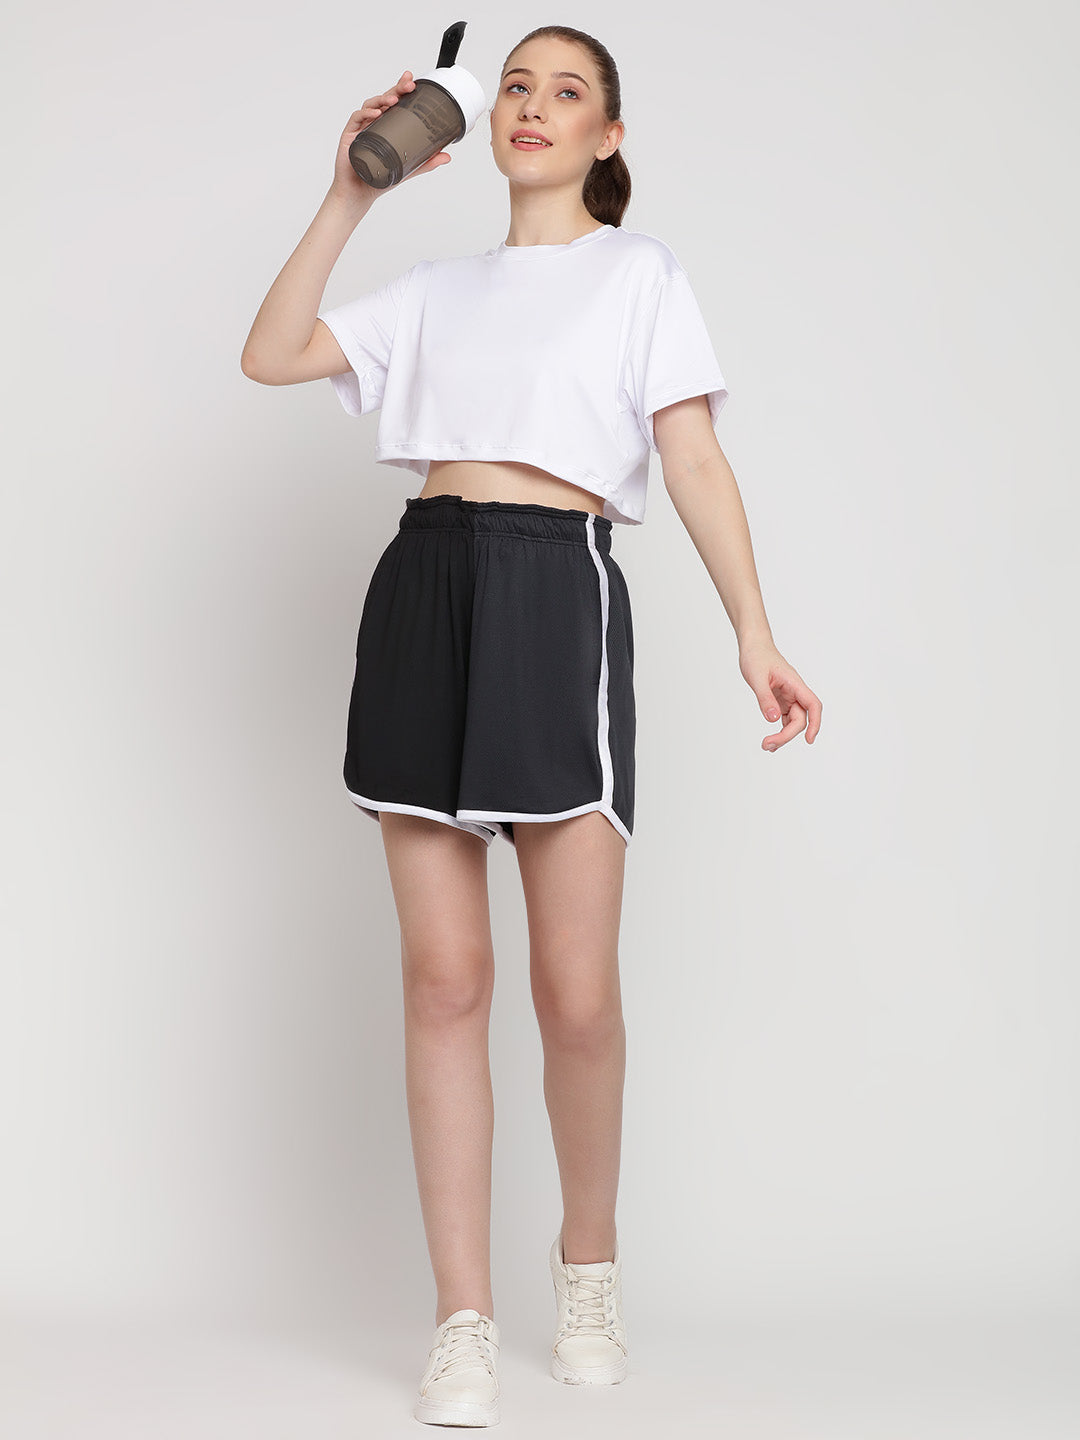 Flow Fit Shorts & Crop Top Set - White